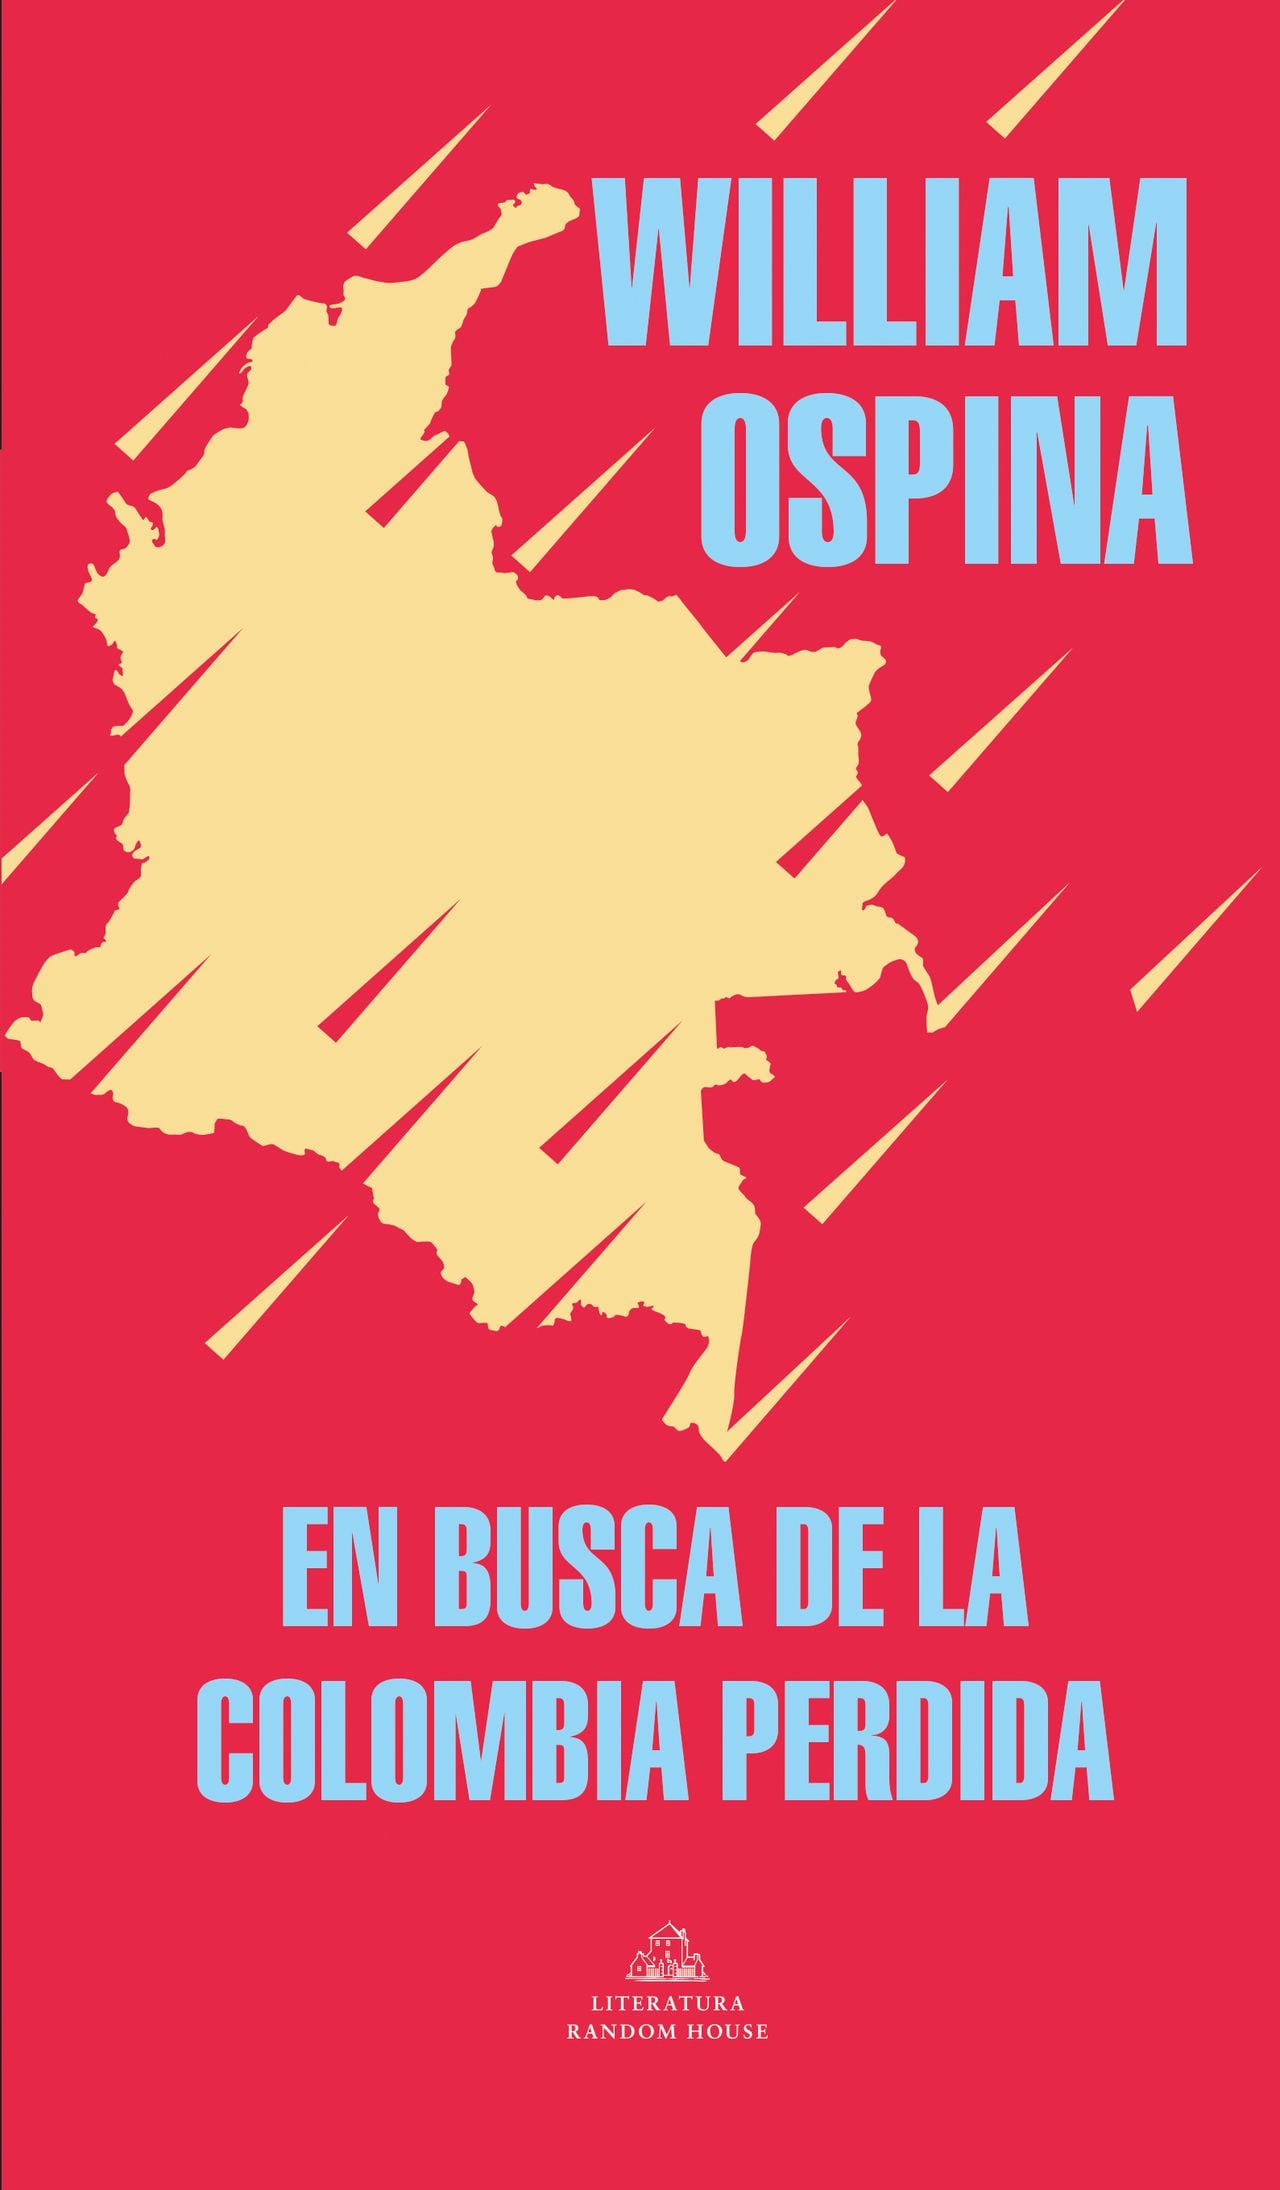 En busca de la Colombia pérdida
William Ospina
Literatura Random House